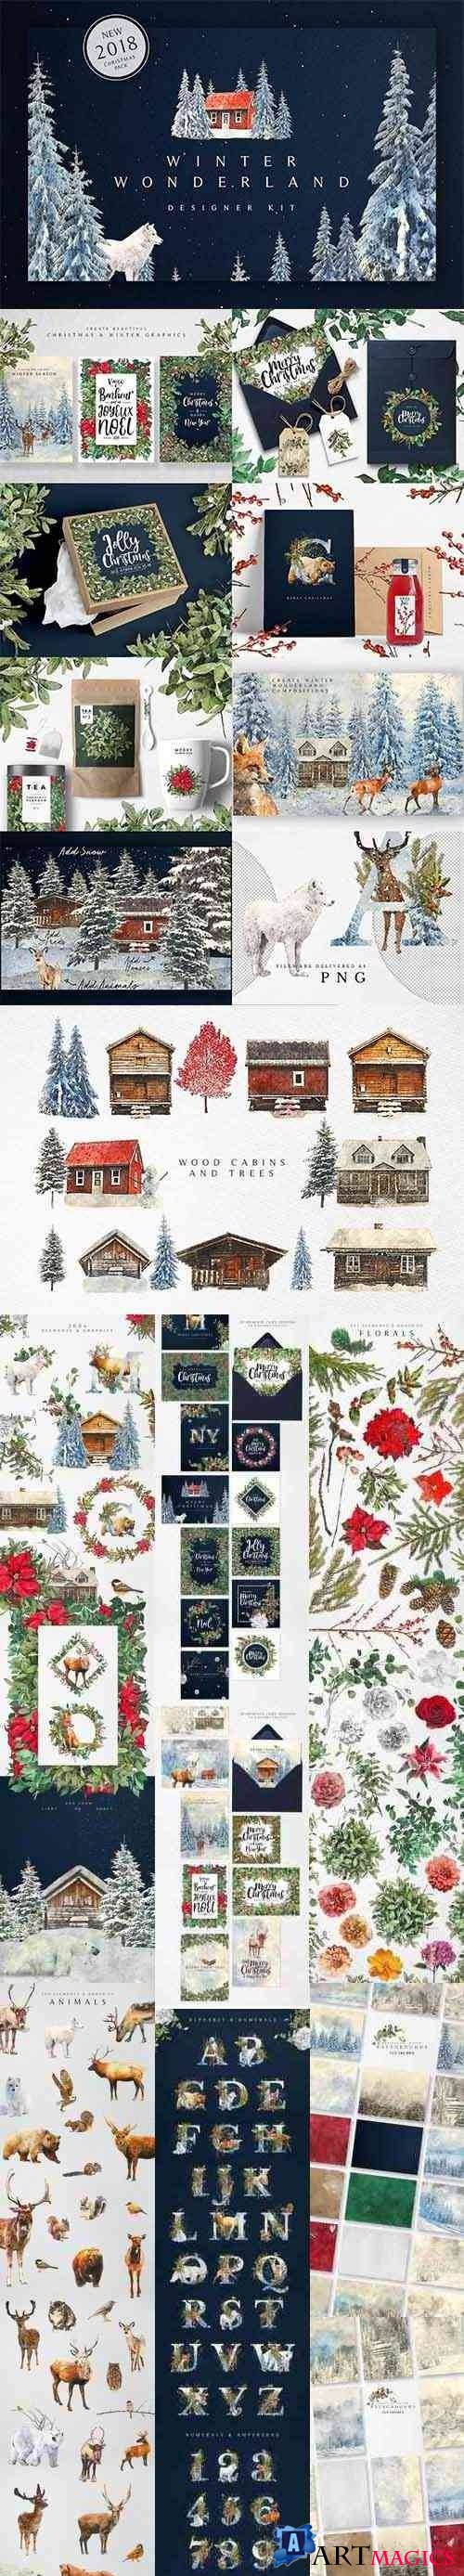 Winter Wonderland Designer Kit - 3102909